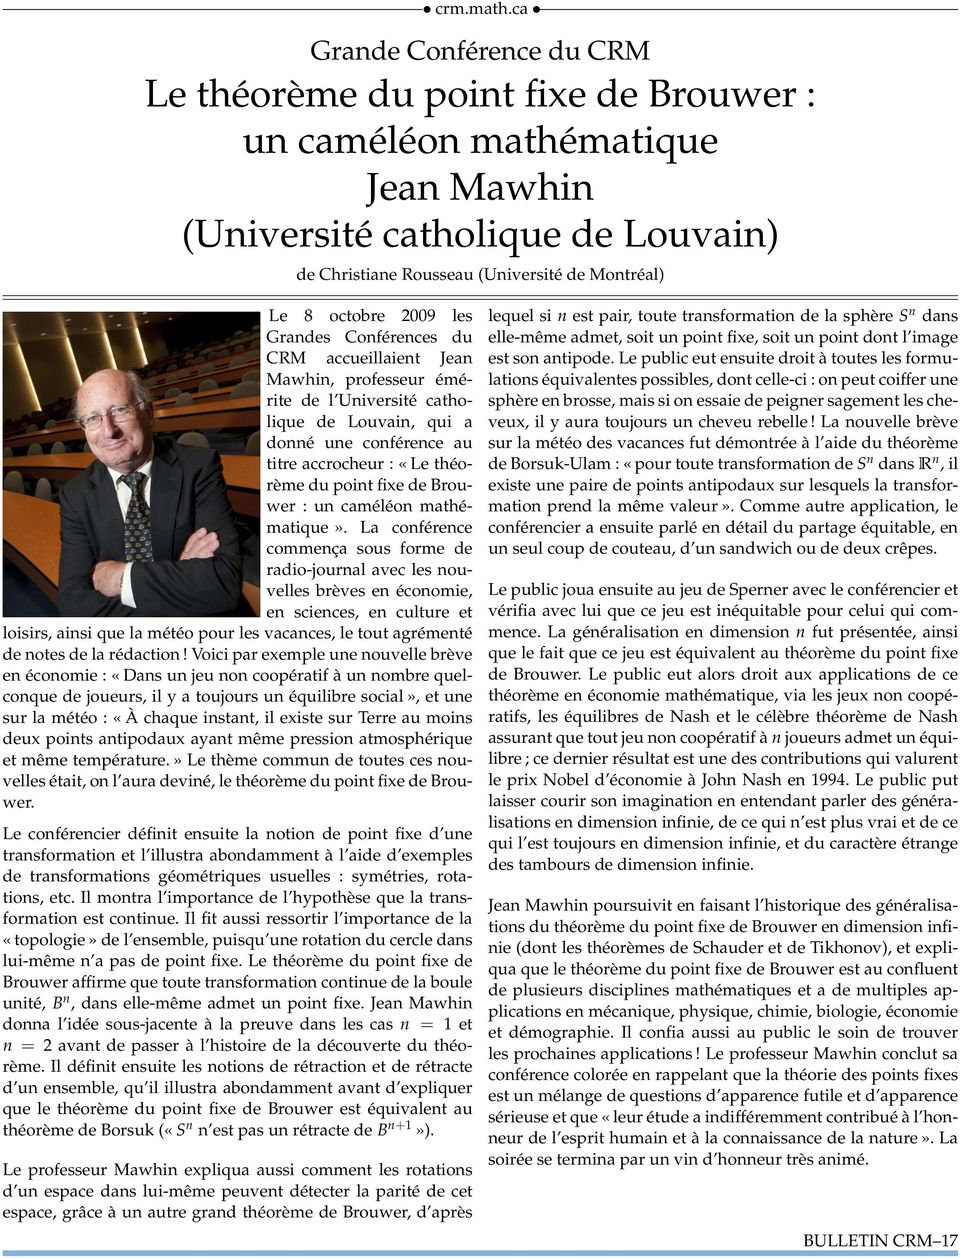 2009 les Grandes Conférences du CRM accueillaient Jean Mawhin, professeur émérite de l Université catholique de Louvain, qui a donné une conférence au titre accrocheur : «Le théorème du point fixe de